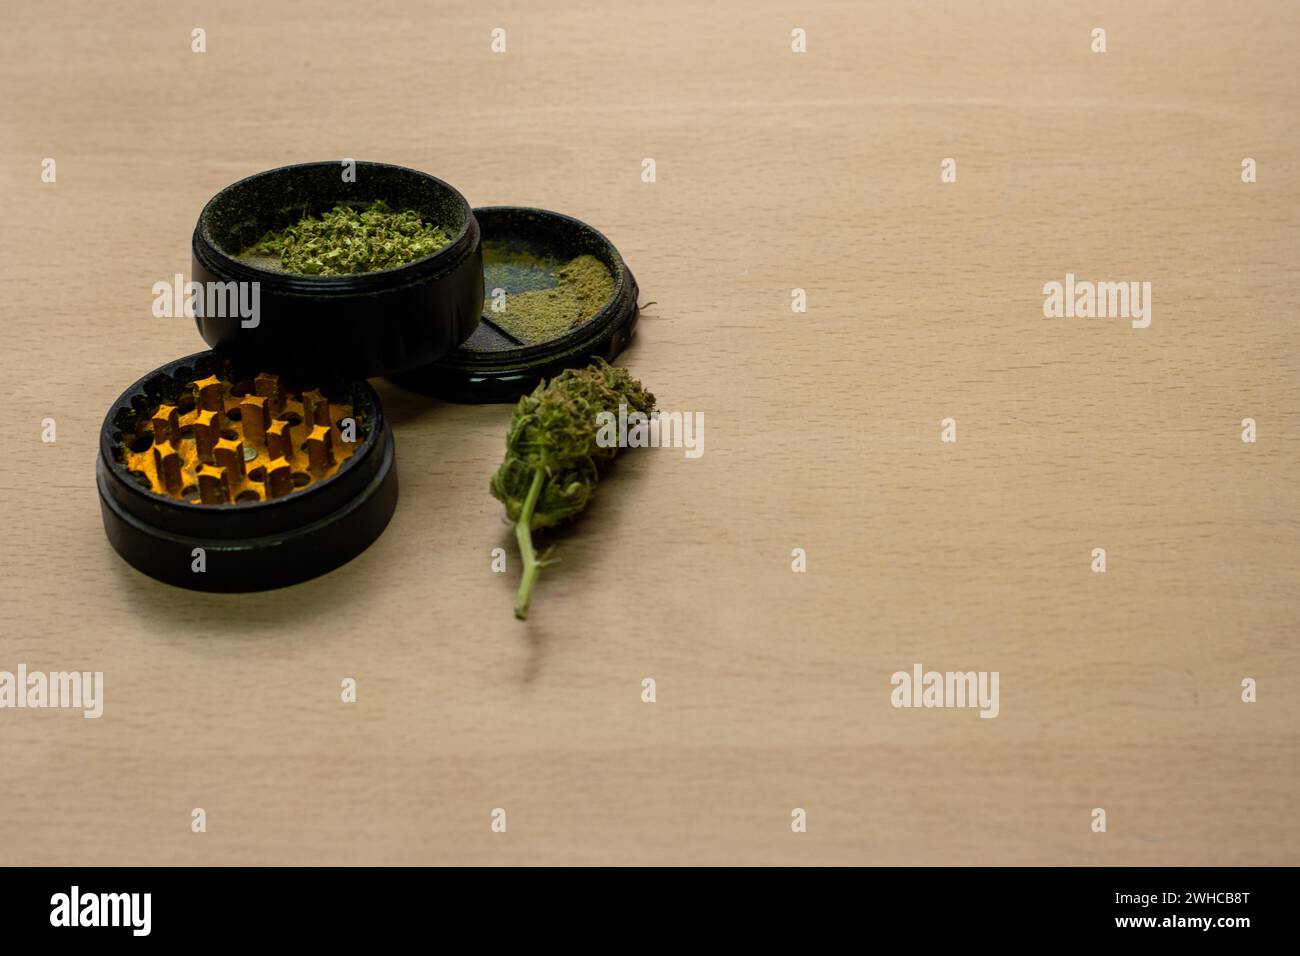 Un molinillo para presionar marihuana con un brote junto a ella sobre una superficie de madera Foto de stock